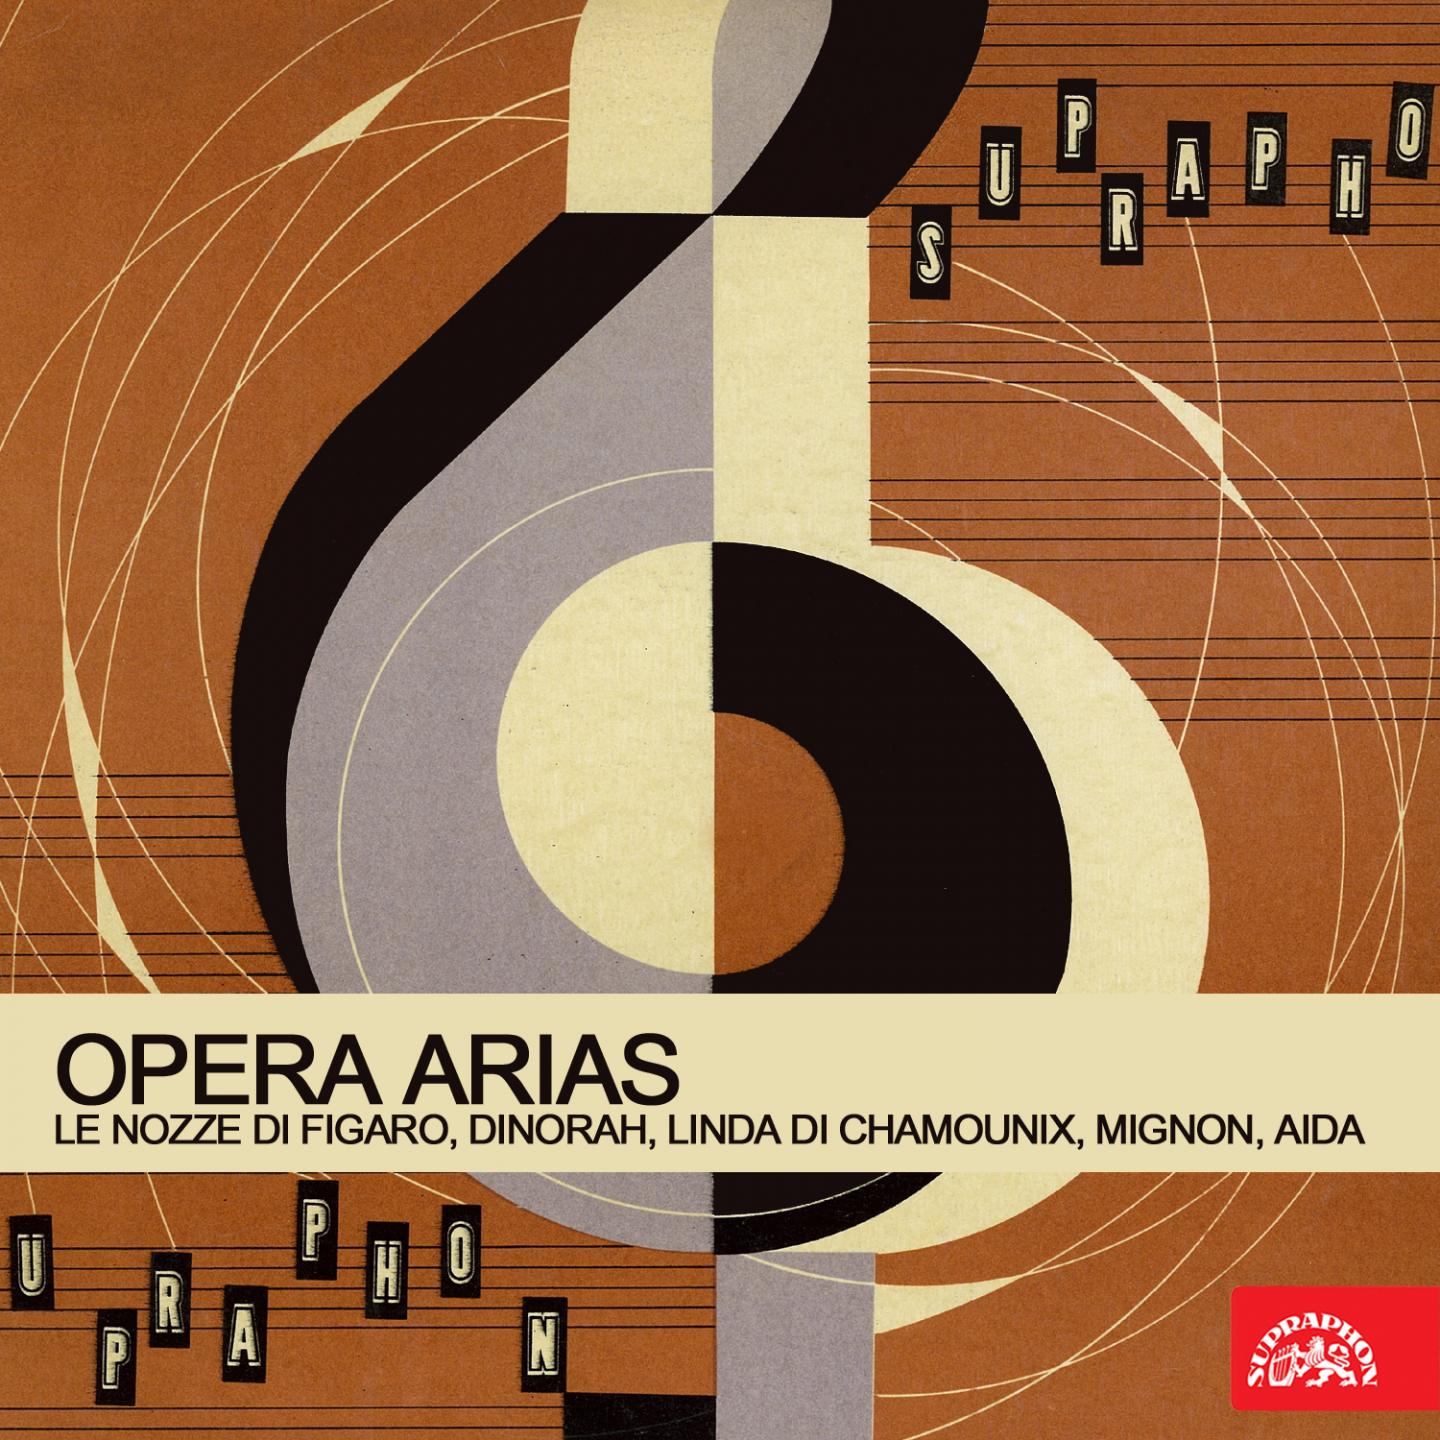 Opera Arias / Le nozze di Figaro, Dinorah, Linda di Chamounix, Mignon, Aida